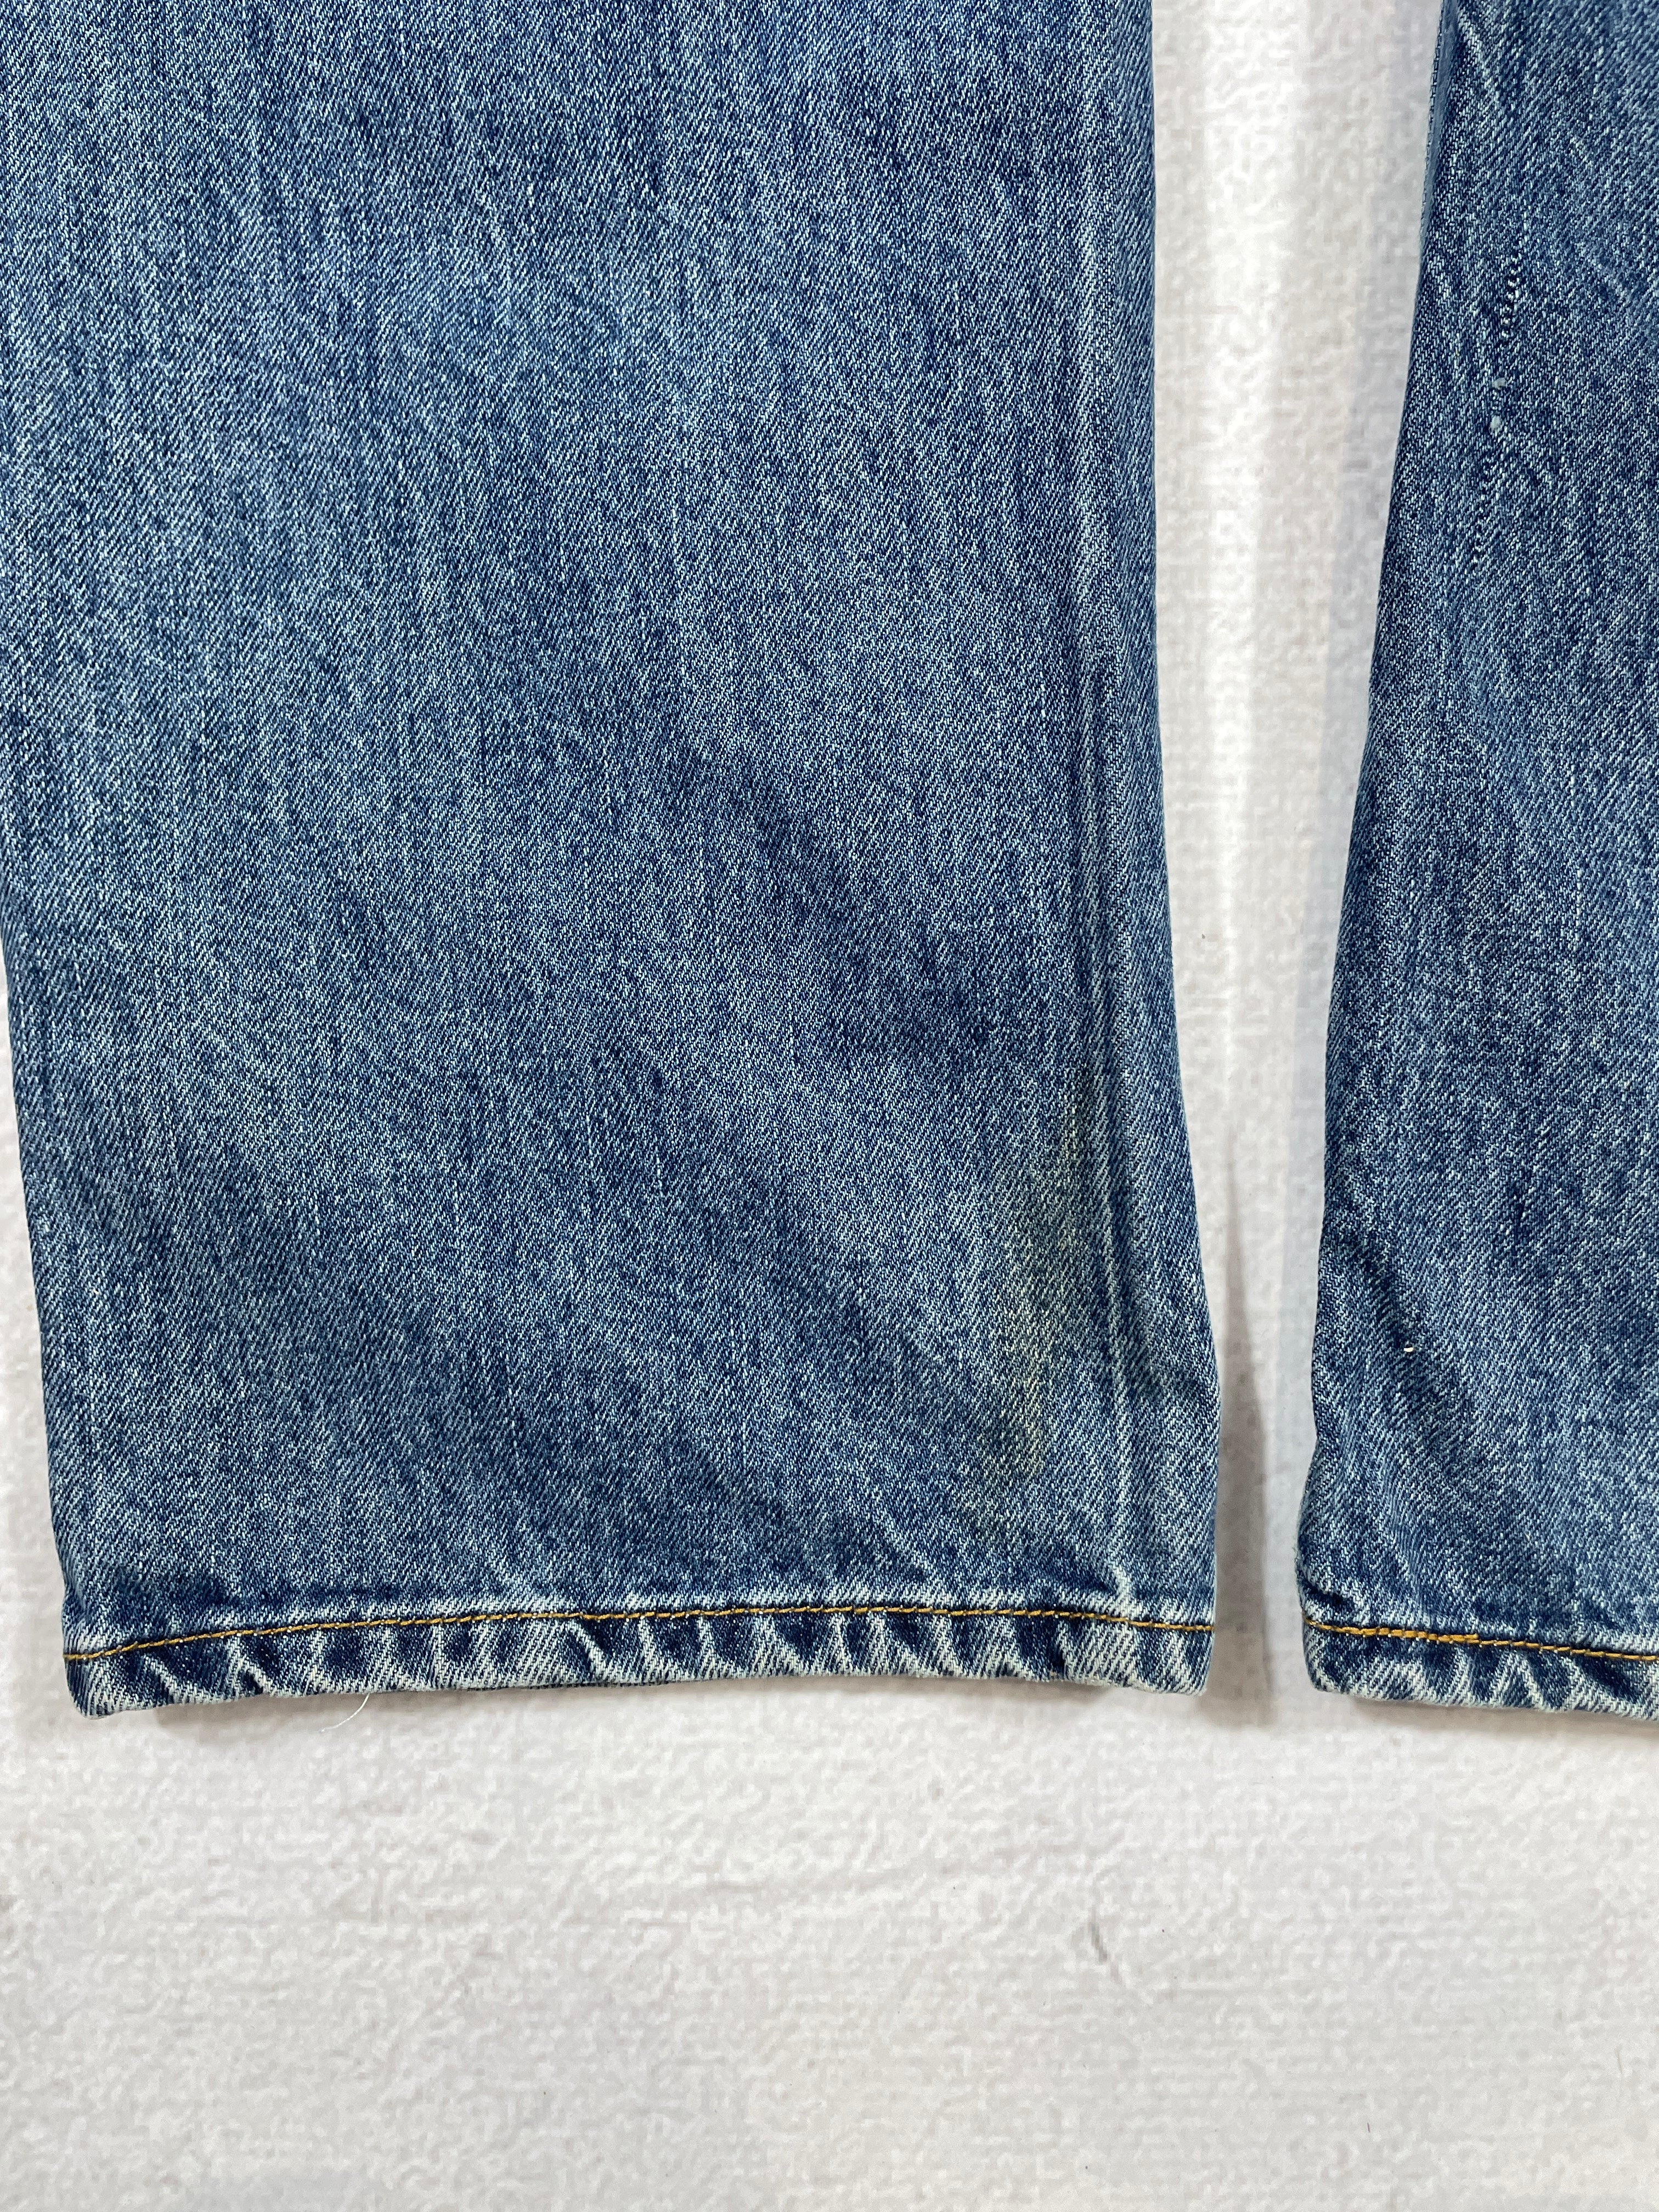 Vintage Levis 501 Jeans - Men's 33Wx34